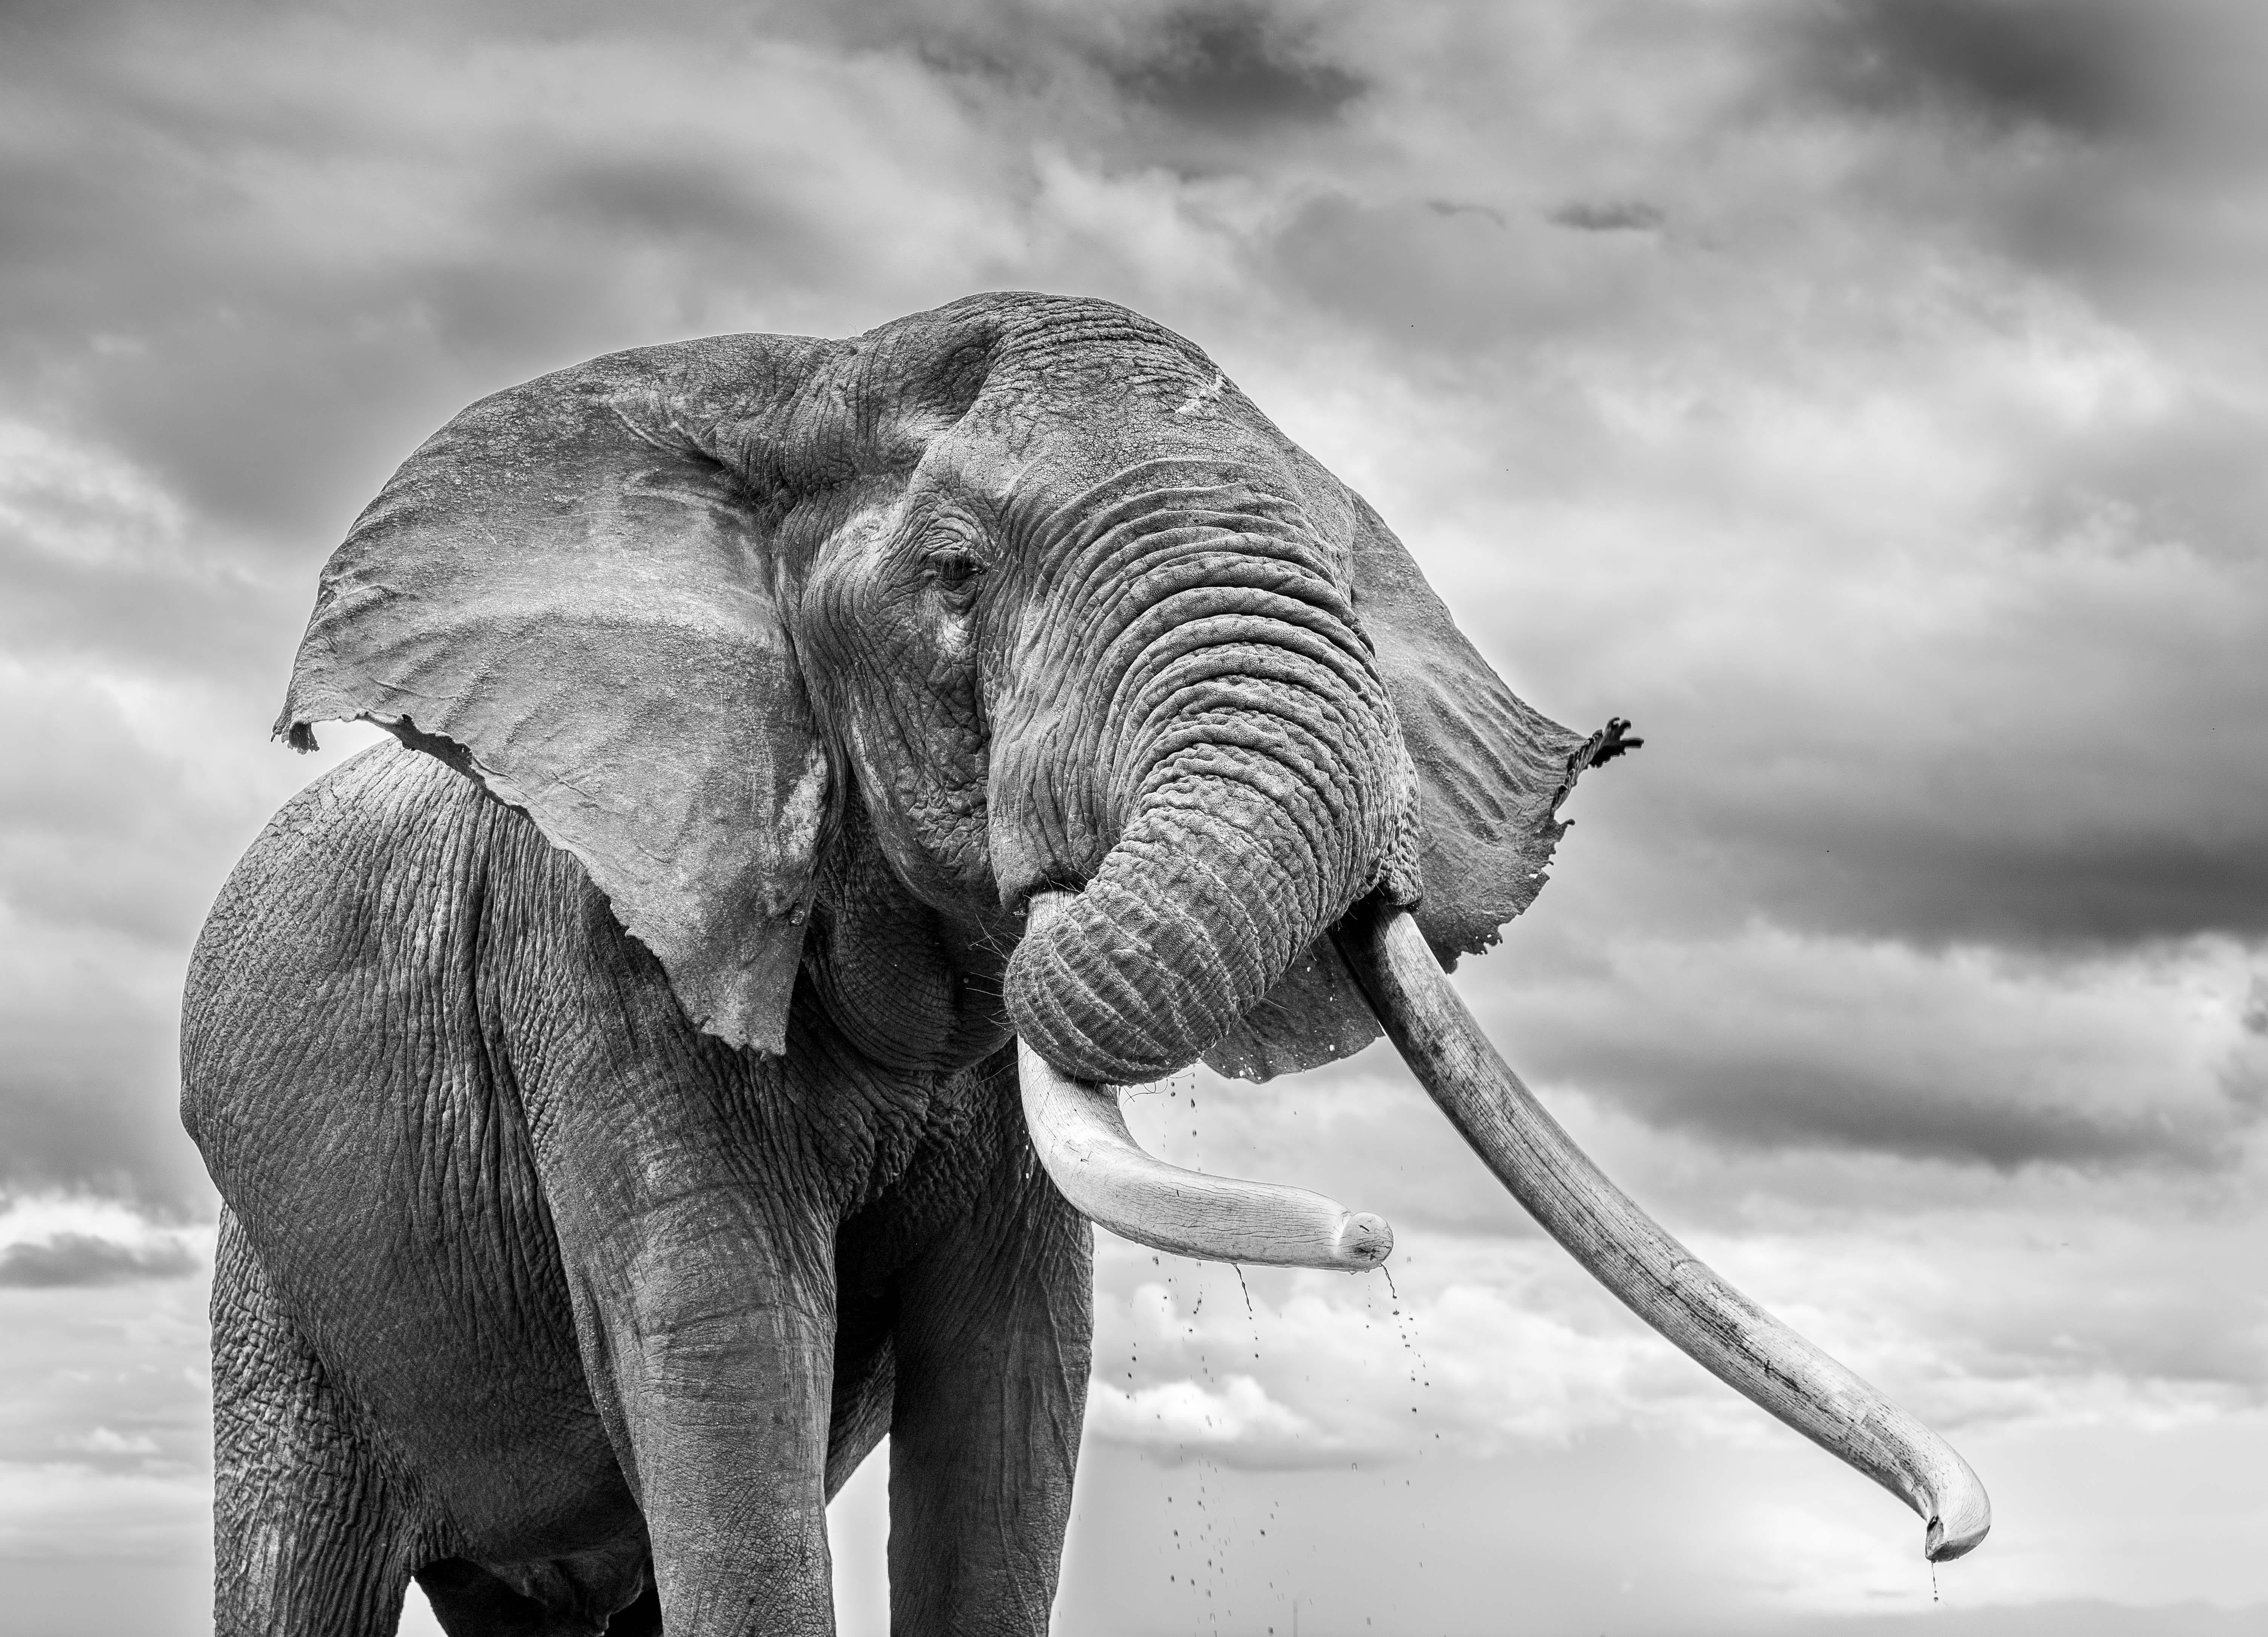 One Ton, einer der etwa 20 größten Elefanten Afrikas. Er ist zweifellos der König der Chyulu Hills. Er wird von allen Tieren und Menschen, die das Glück haben, ihn zu Gesicht zu bekommen, mit großer Ehrfurcht und Respekt begrüßt. Einem Big Tusker im